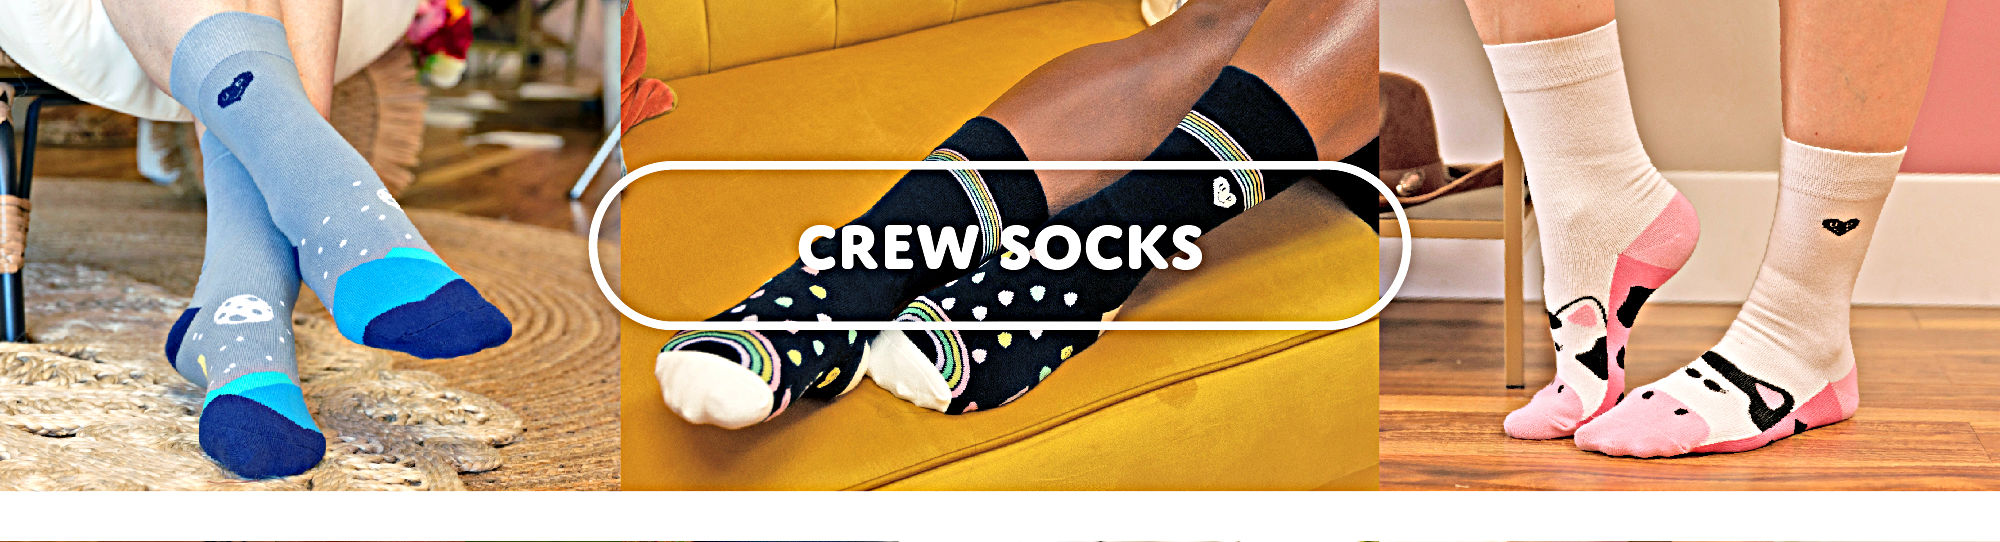 Crew socks.